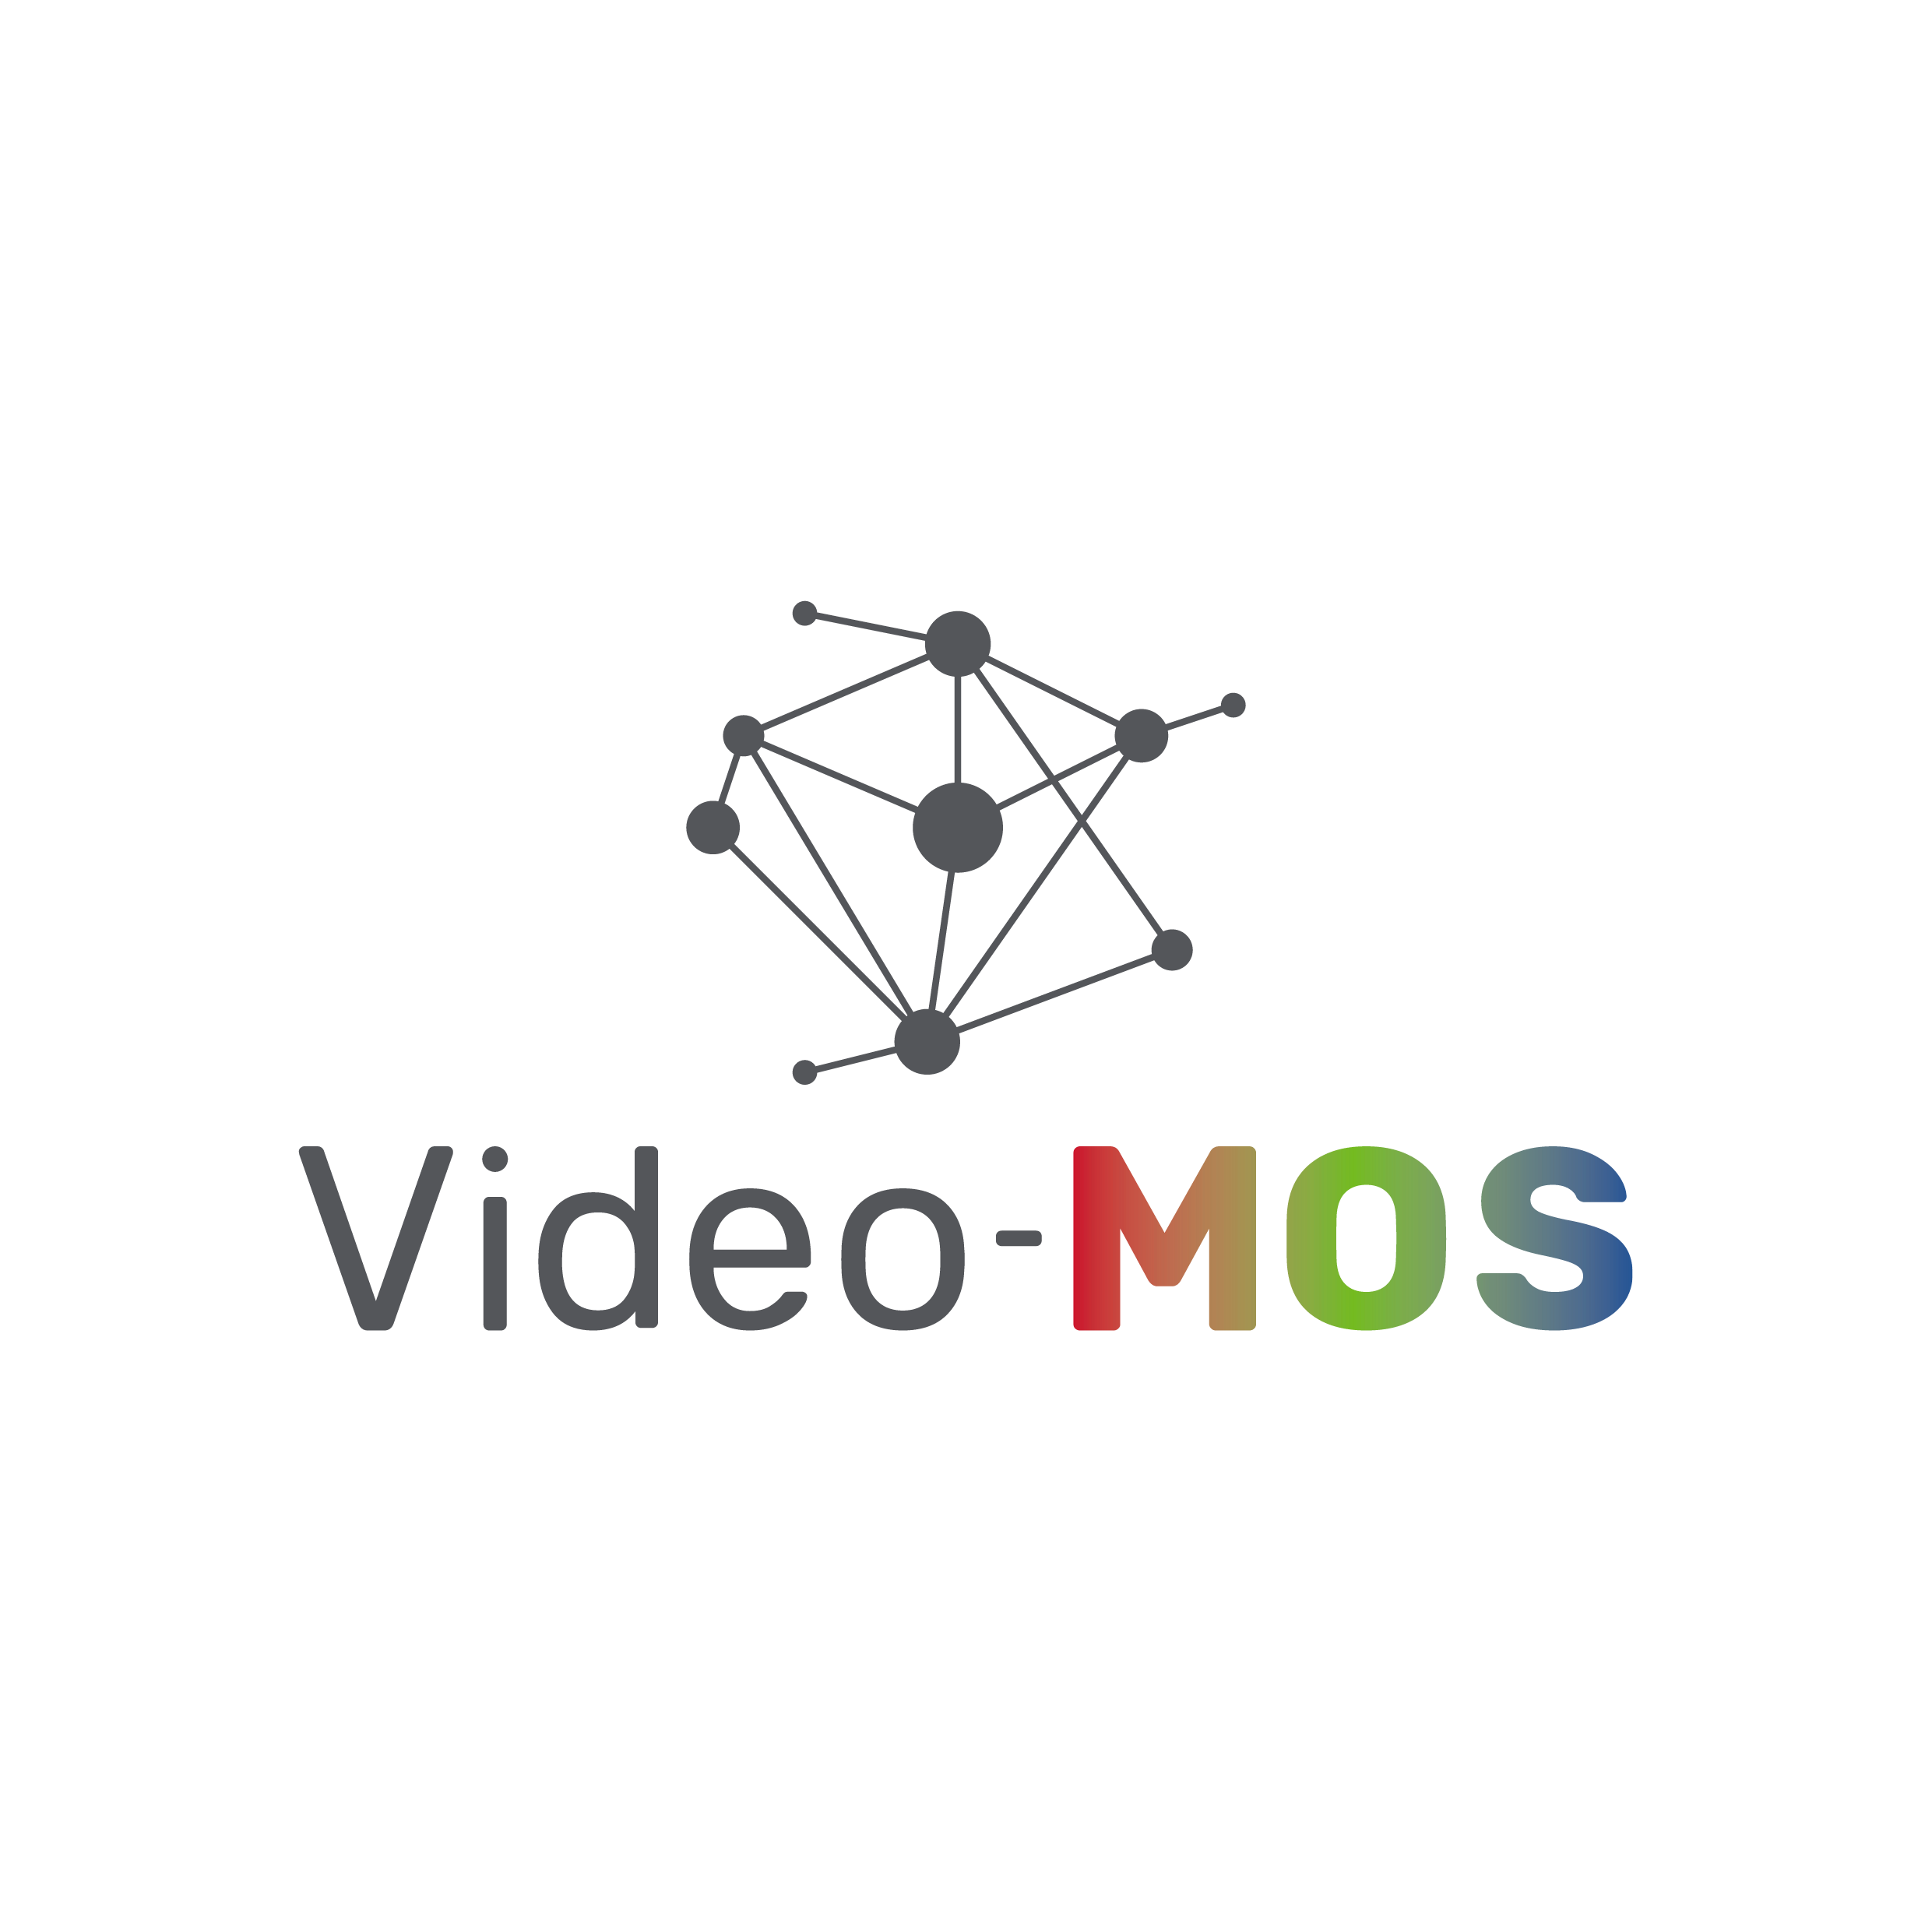 Video-MOS